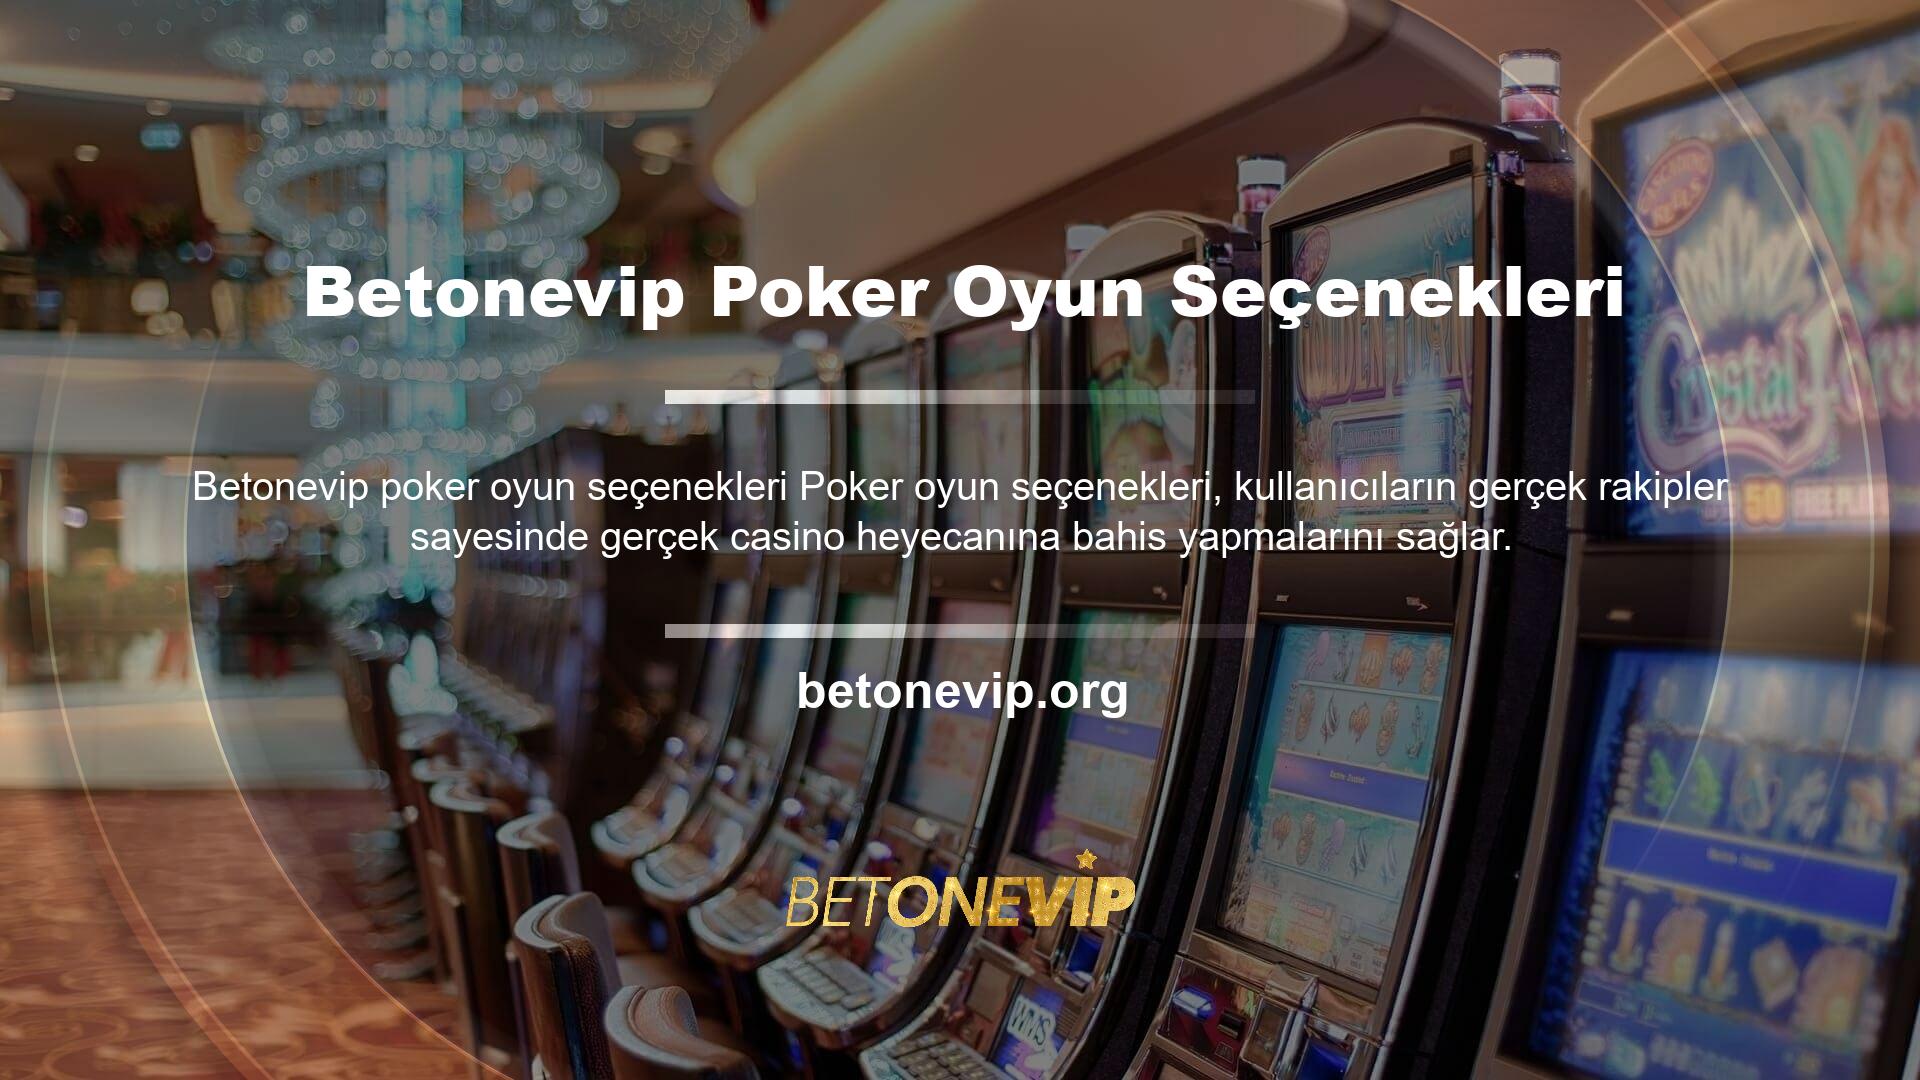 Poker programı, Betonevip poker oyunlarının güvenilir olup olmadığını ve kullanıcıların oyunlara katıldıklarında ne düşündüklerini dikkate alır